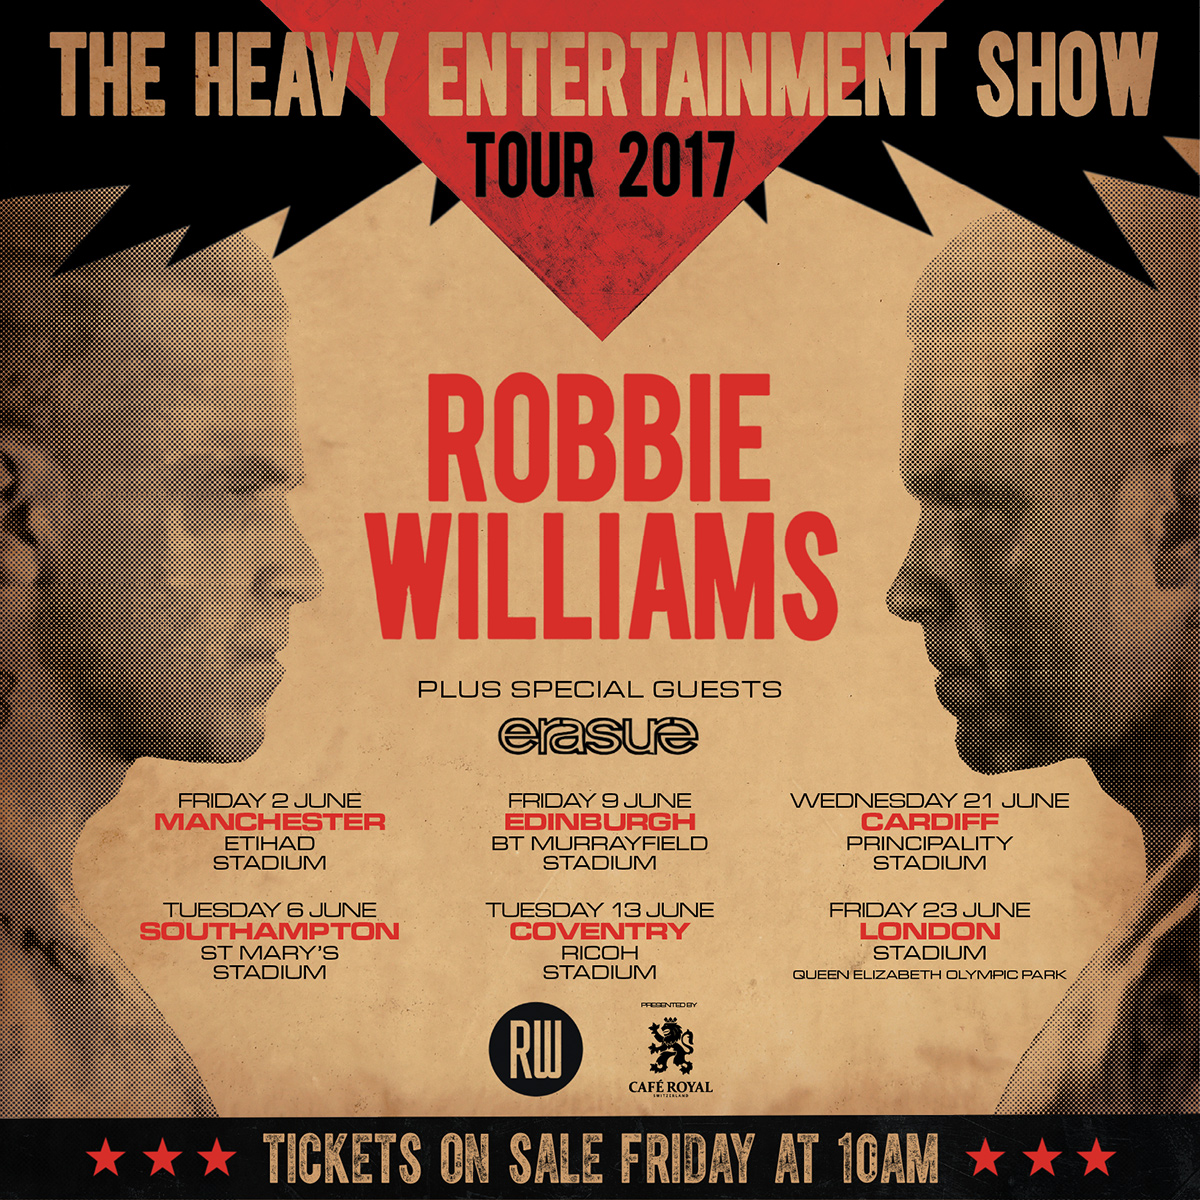 Robbie Williams announces 2017 stadium tour with special guest Erasure | Ticketmaster ...